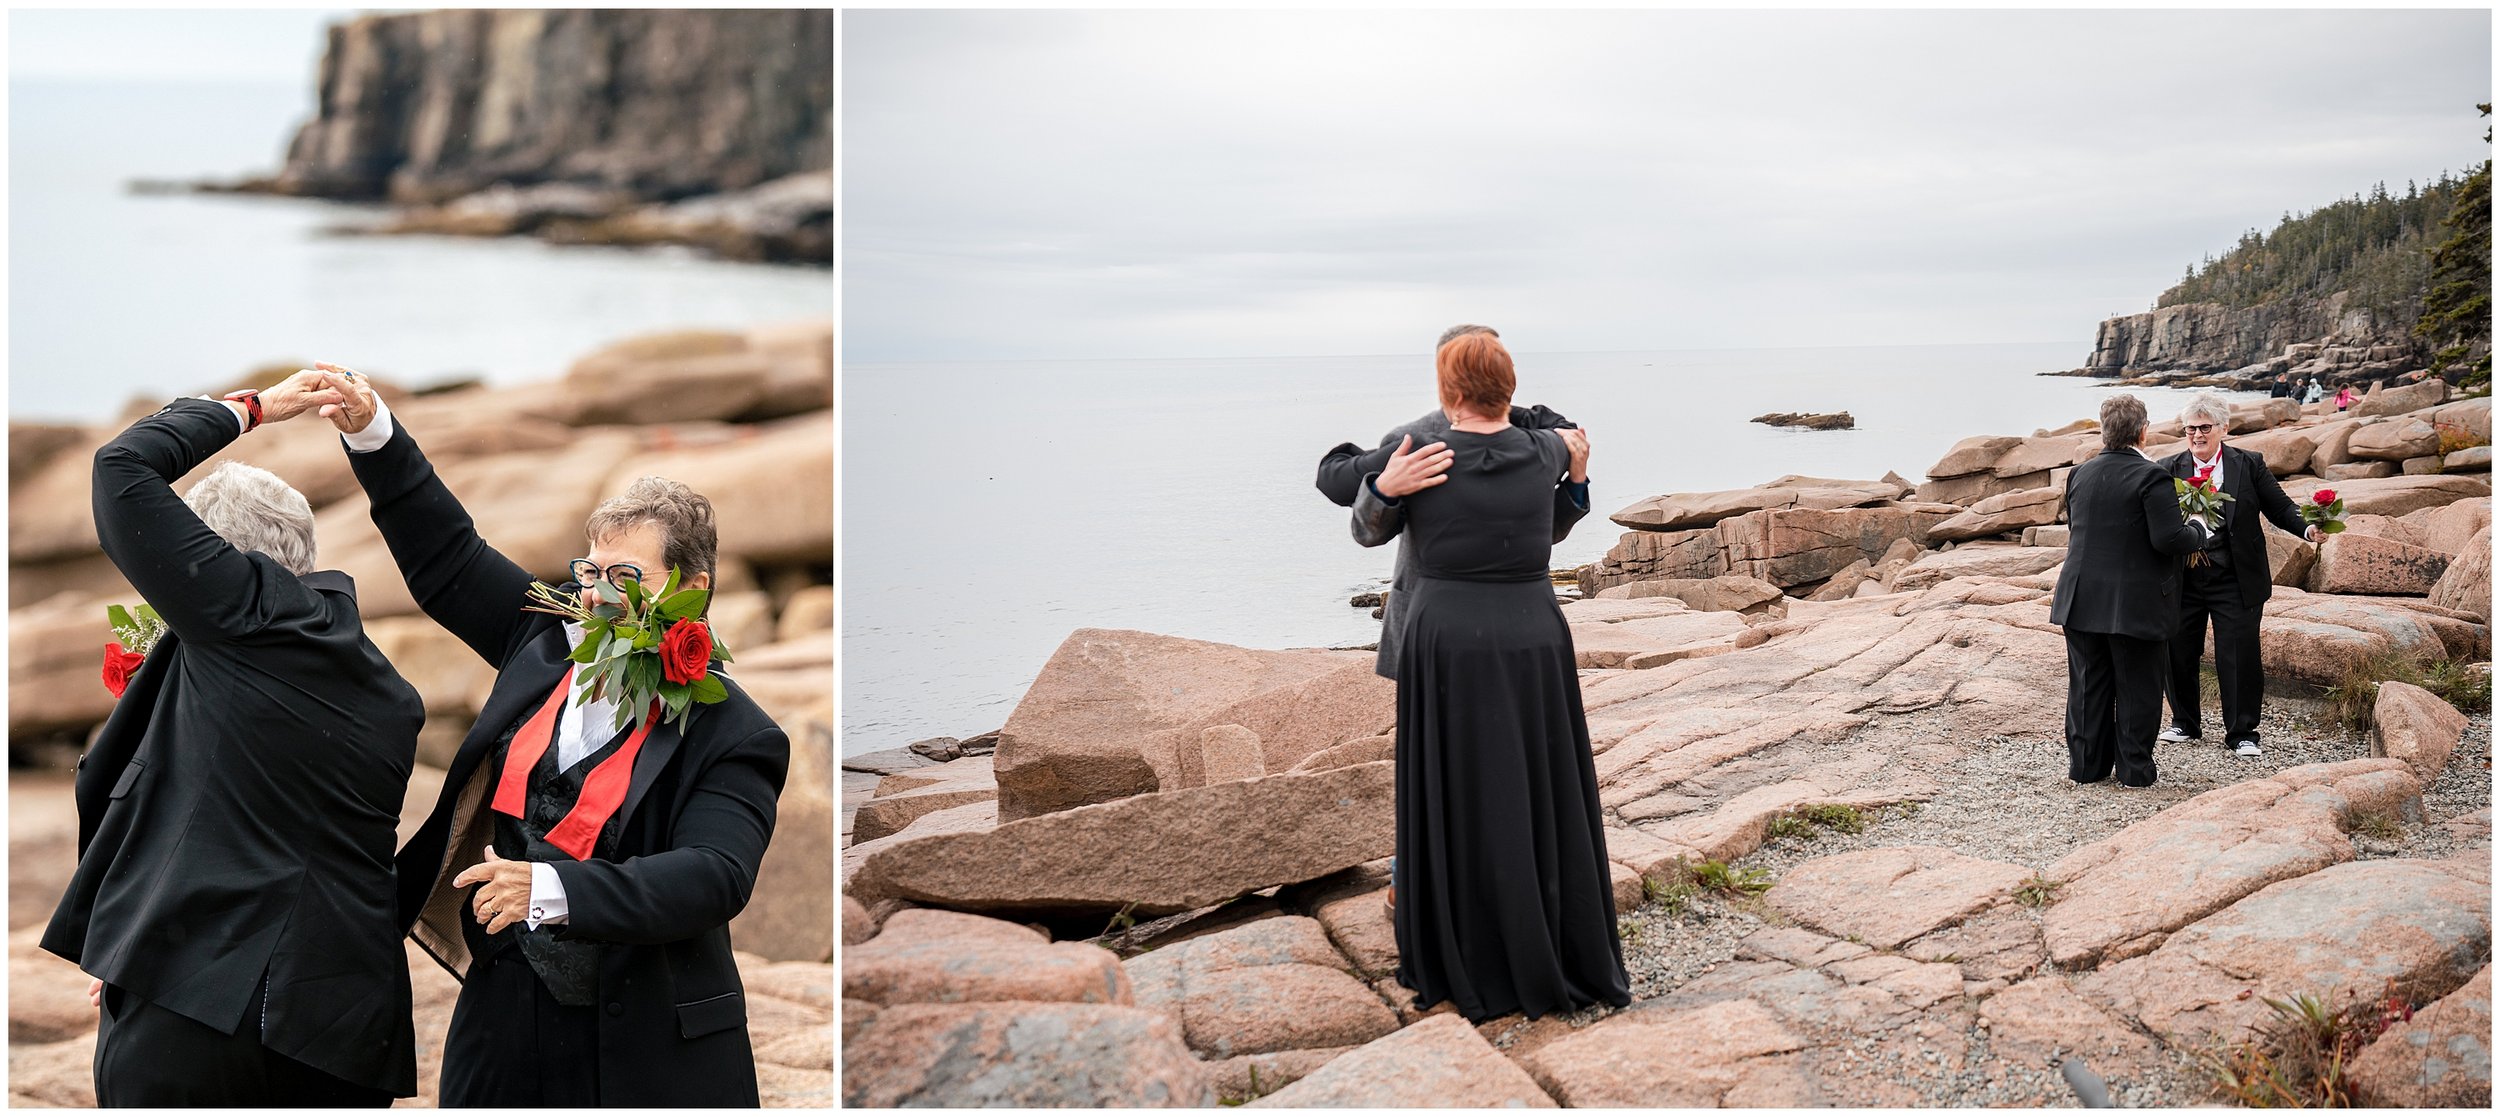 Acadia National Park Wedding Photographer, Bar Harbor Wedding Photographer, Two Adventurous Souls- 101022_0019.jpg